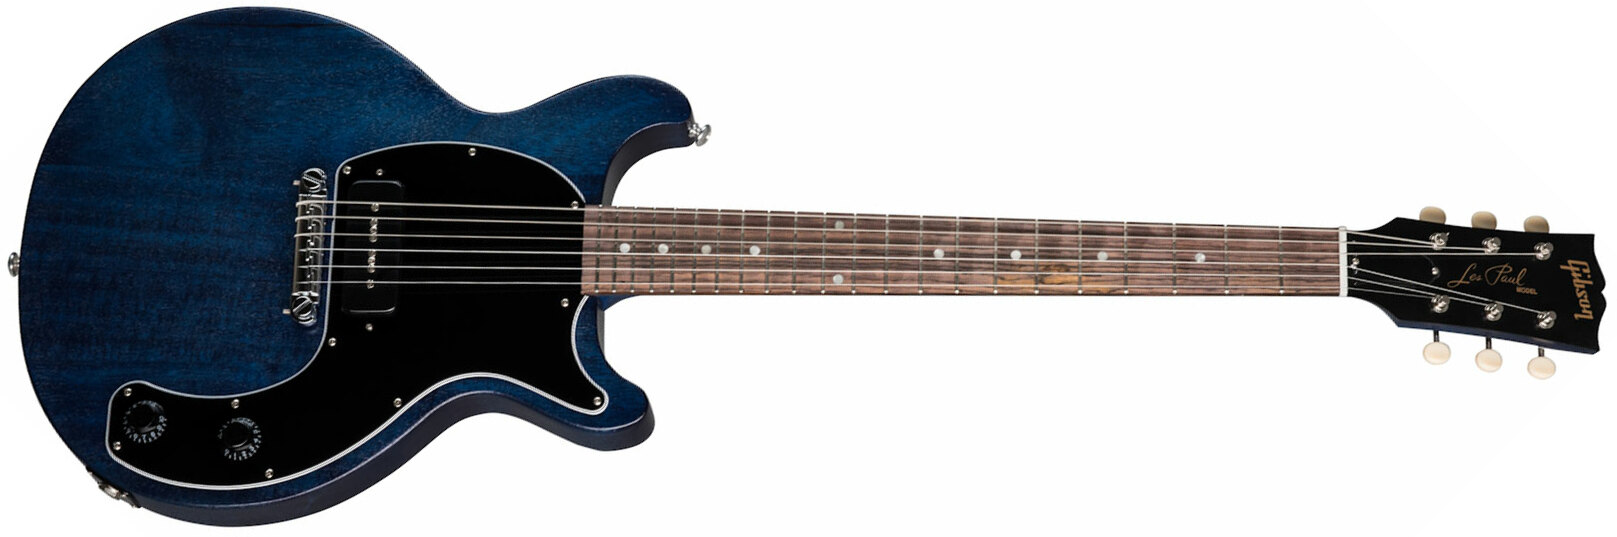 Gibson Les Paul Junior Tribute Dc Modern P90 - Blue Stain - Guitarra eléctrica de doble corte. - Main picture